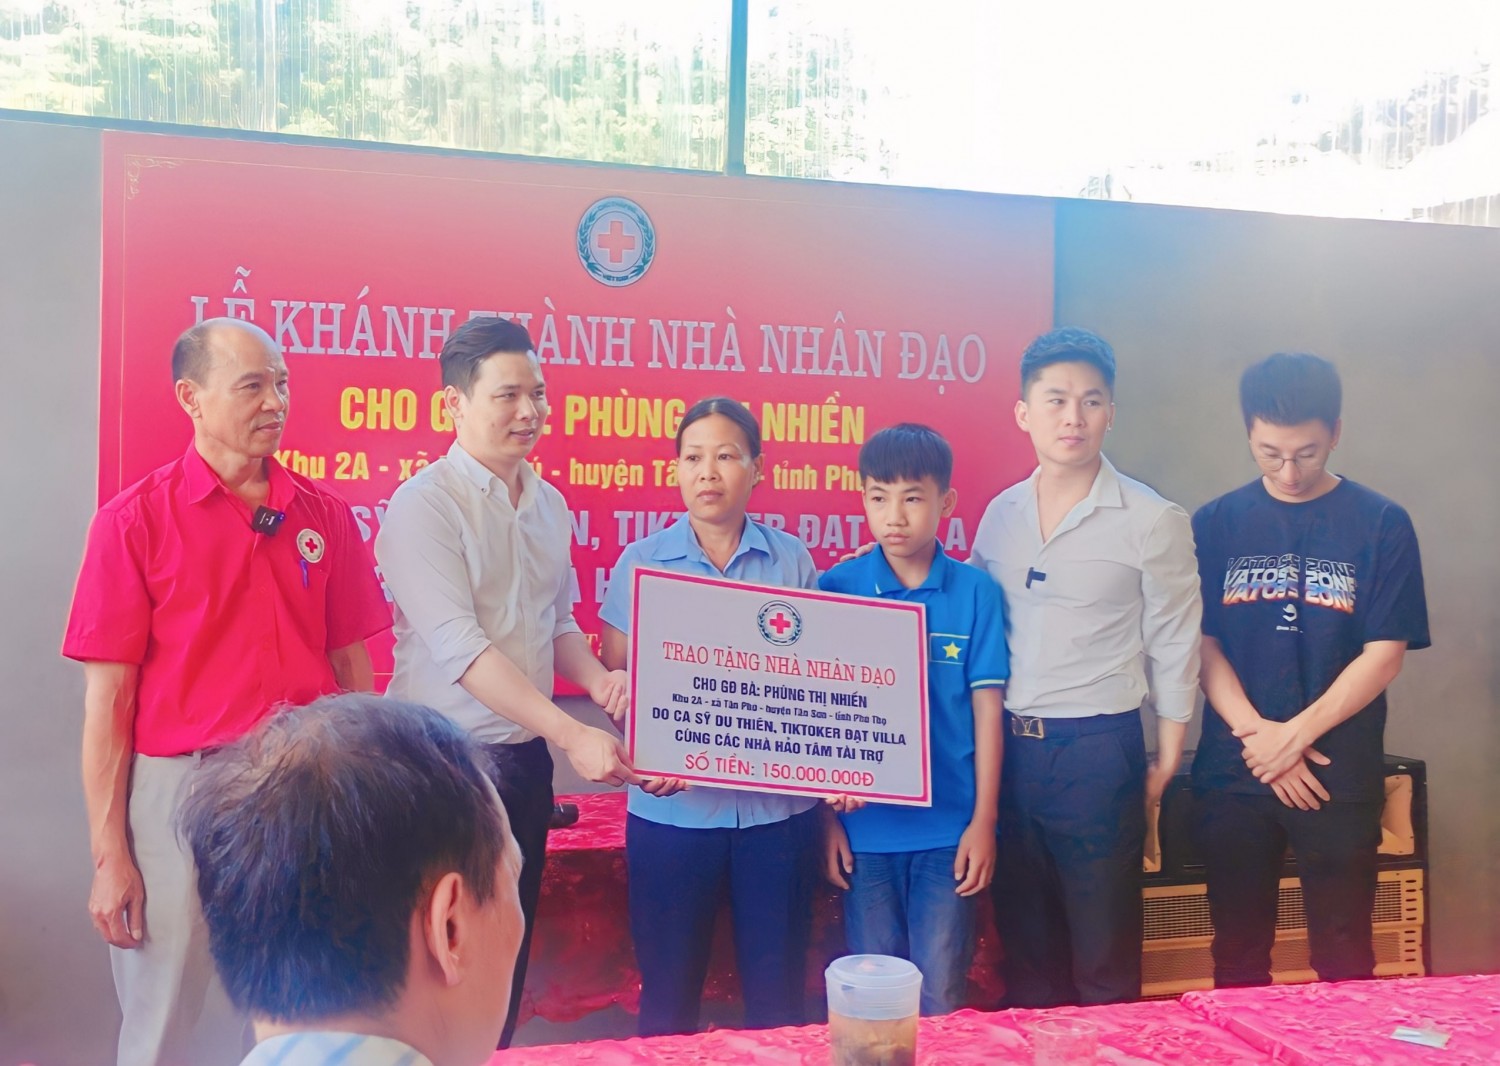 Ca sĩ Du Thiên đến dự lễ khánh thành nhà và trao tiền ủng hộ xây dựng nhà cho bà Phùng Thị Nhiềm tại khu 2A, xã Tân Phú , Tân Sơn